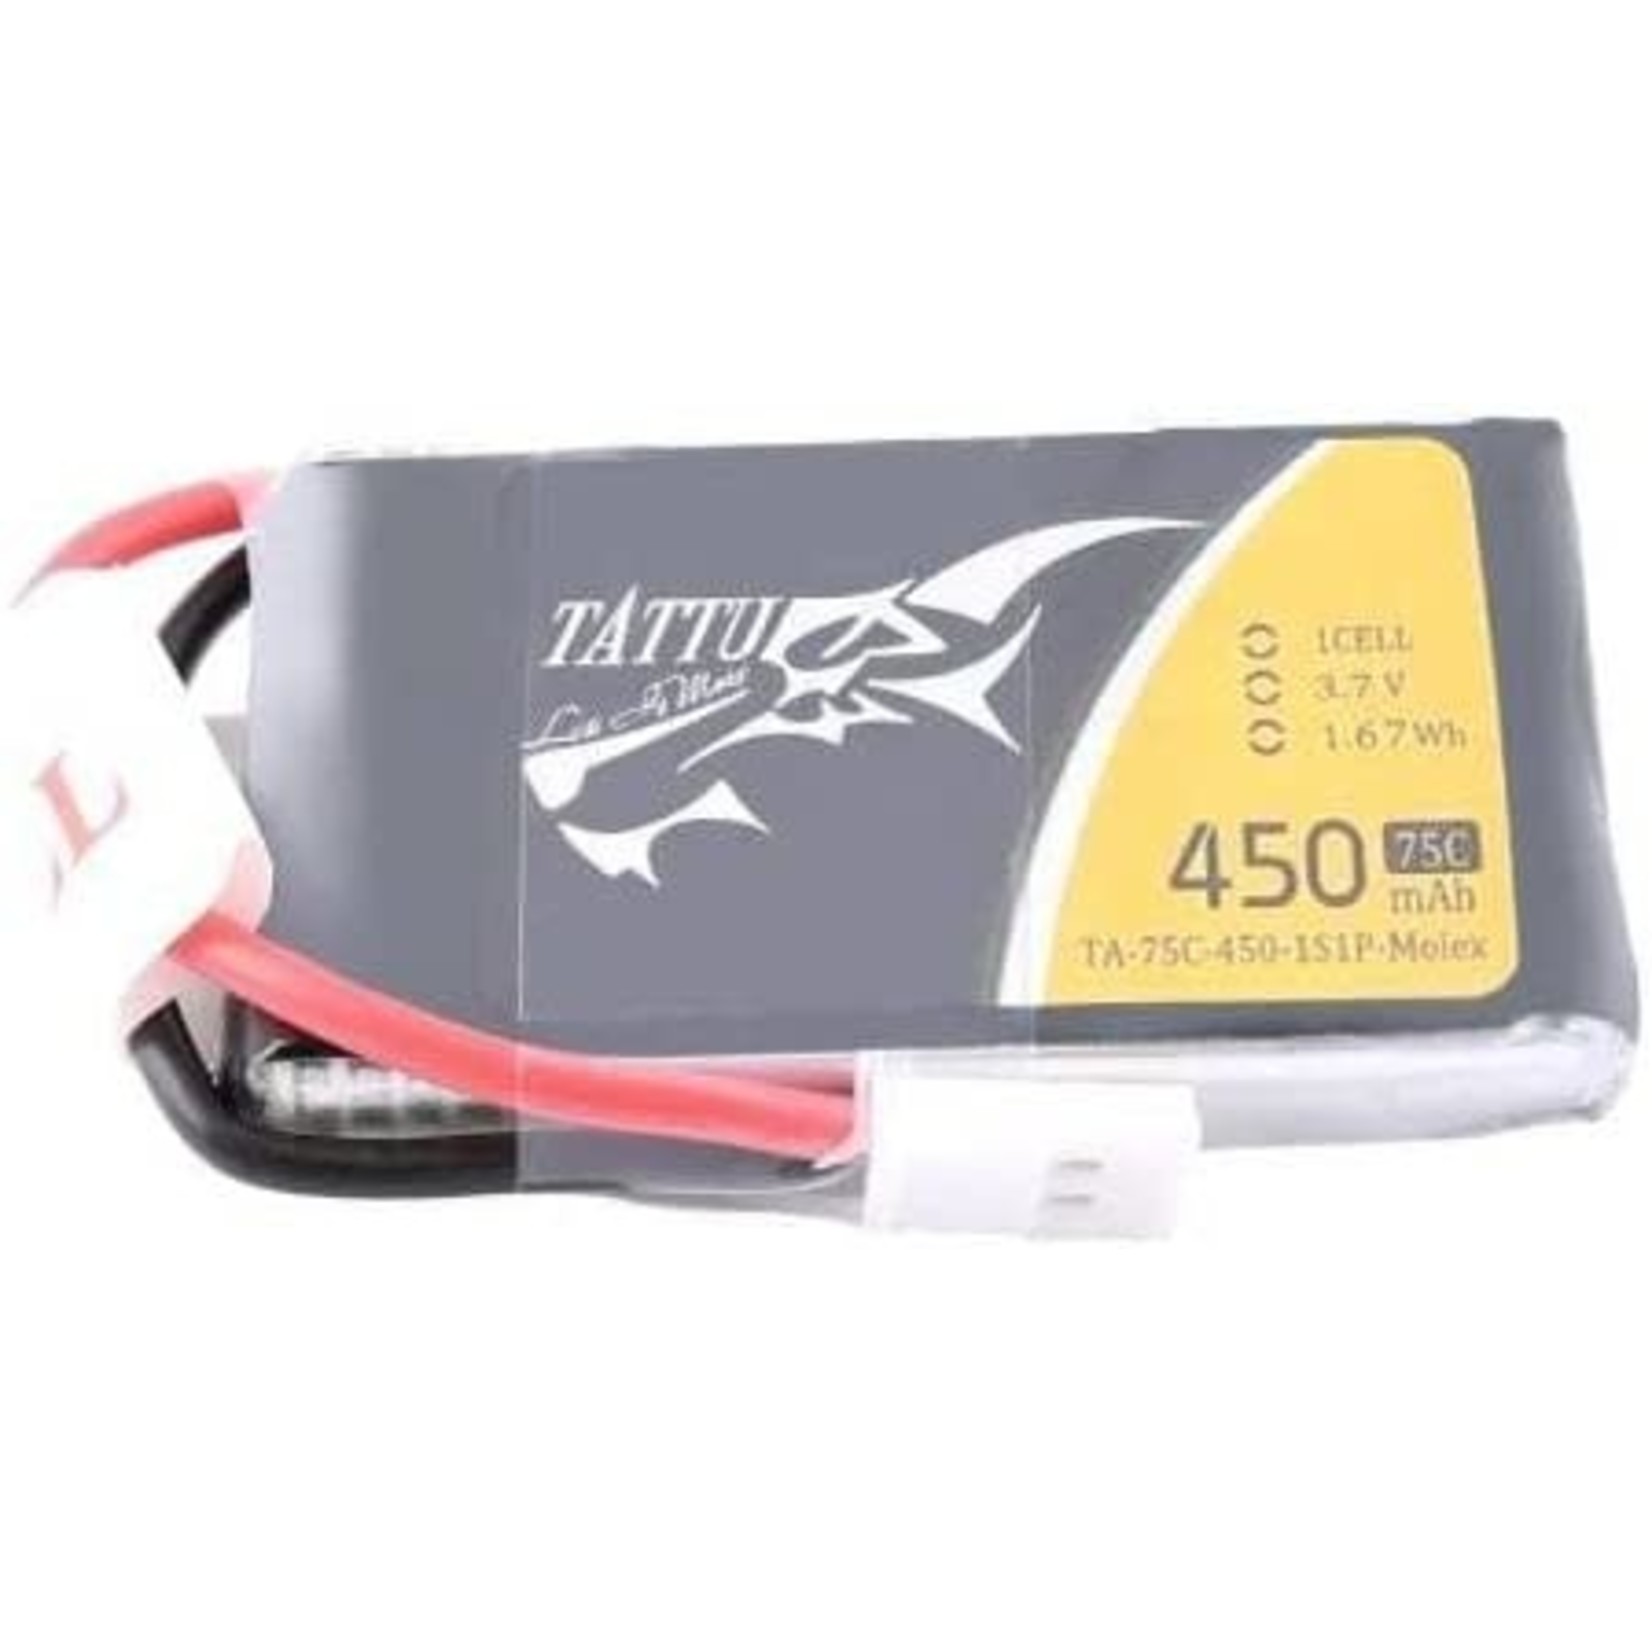 Tattu Tattu 75C 1S1P 3.7V 450mAh Lipo Battery Pack w/Molex Plug #TA-75C-450-1S1P-Molex